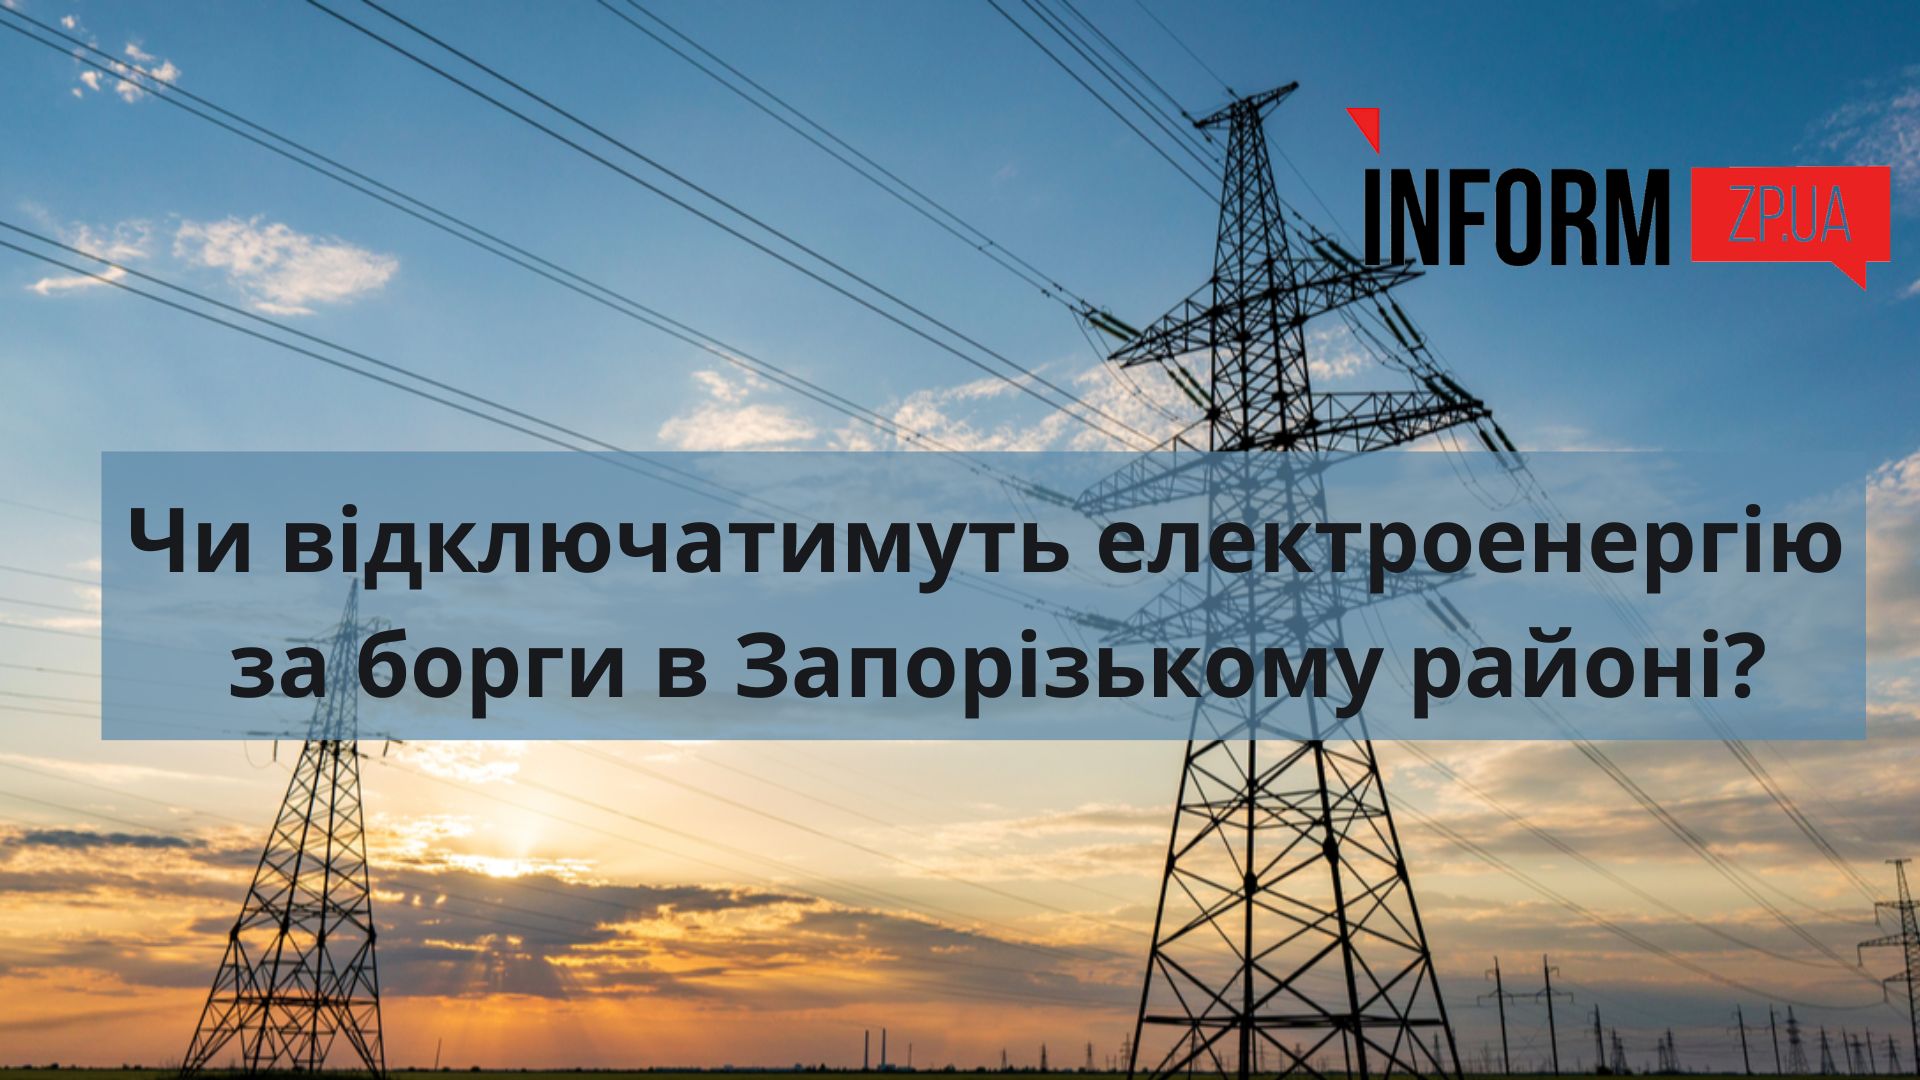 В Запорожье сделали новое заявление об отключении электроэнергии за долги в Запорожском районе